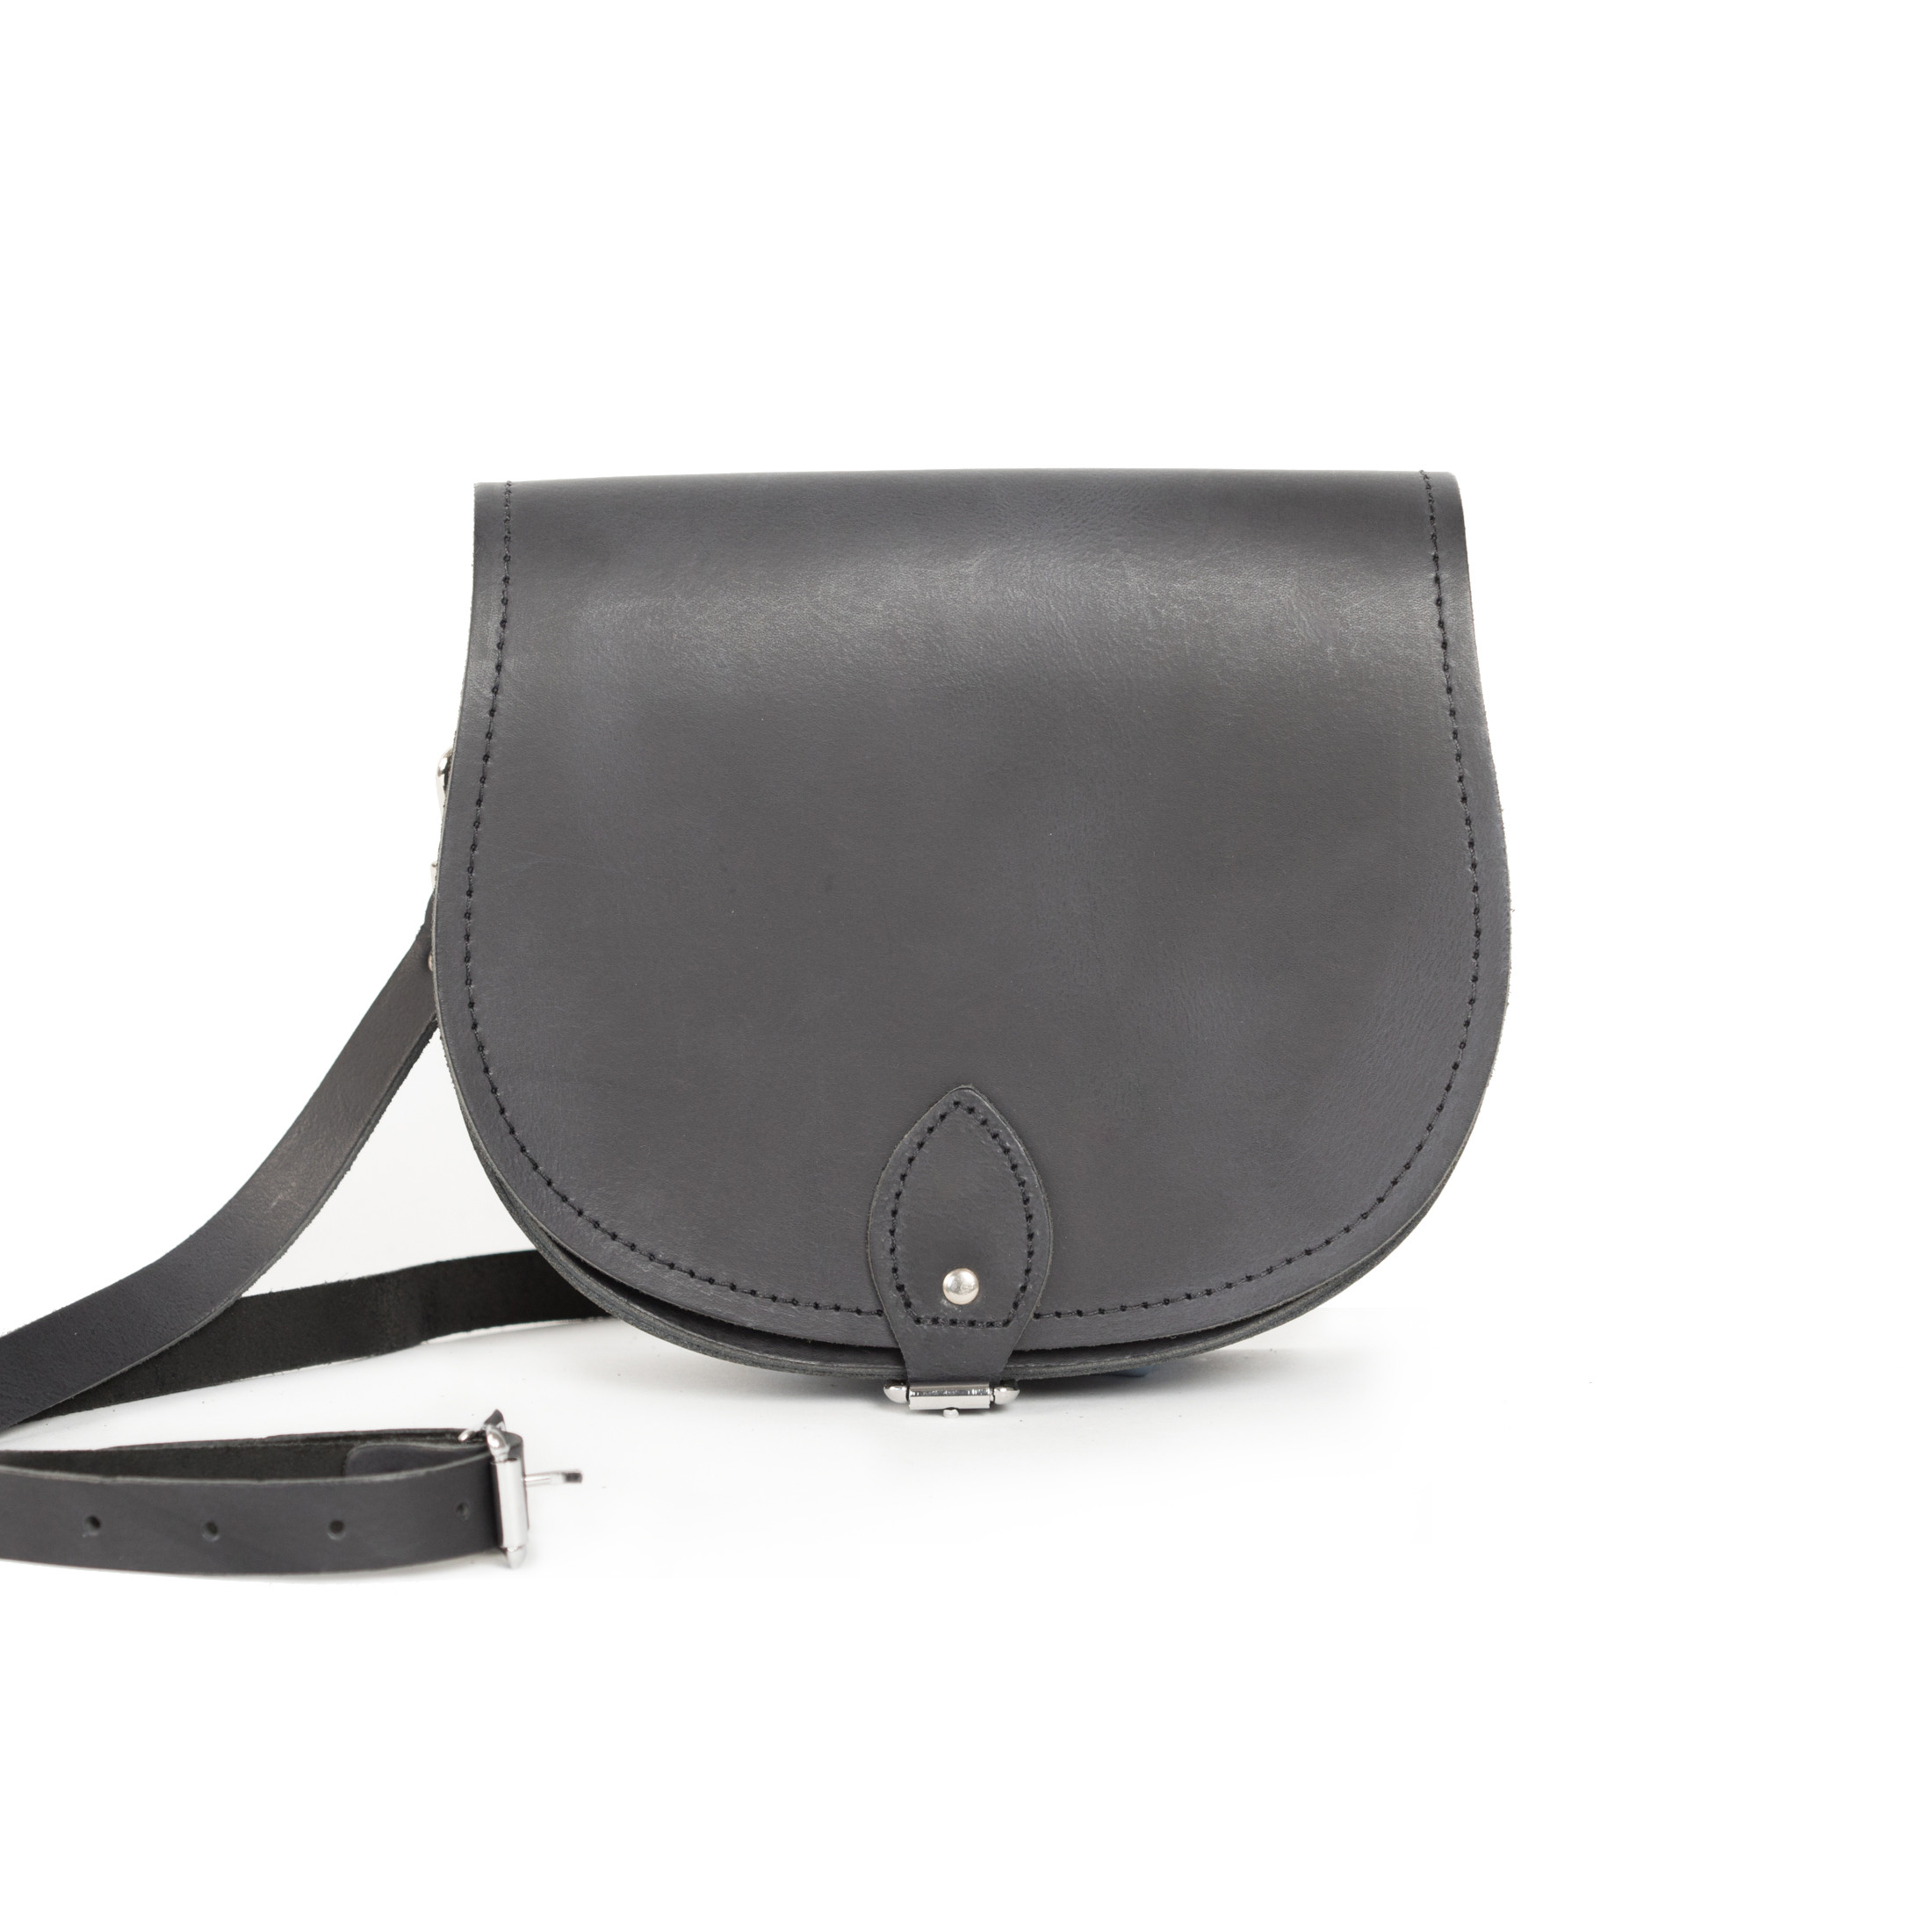 Avery Premium Leather Saddle Bag in Premium Black